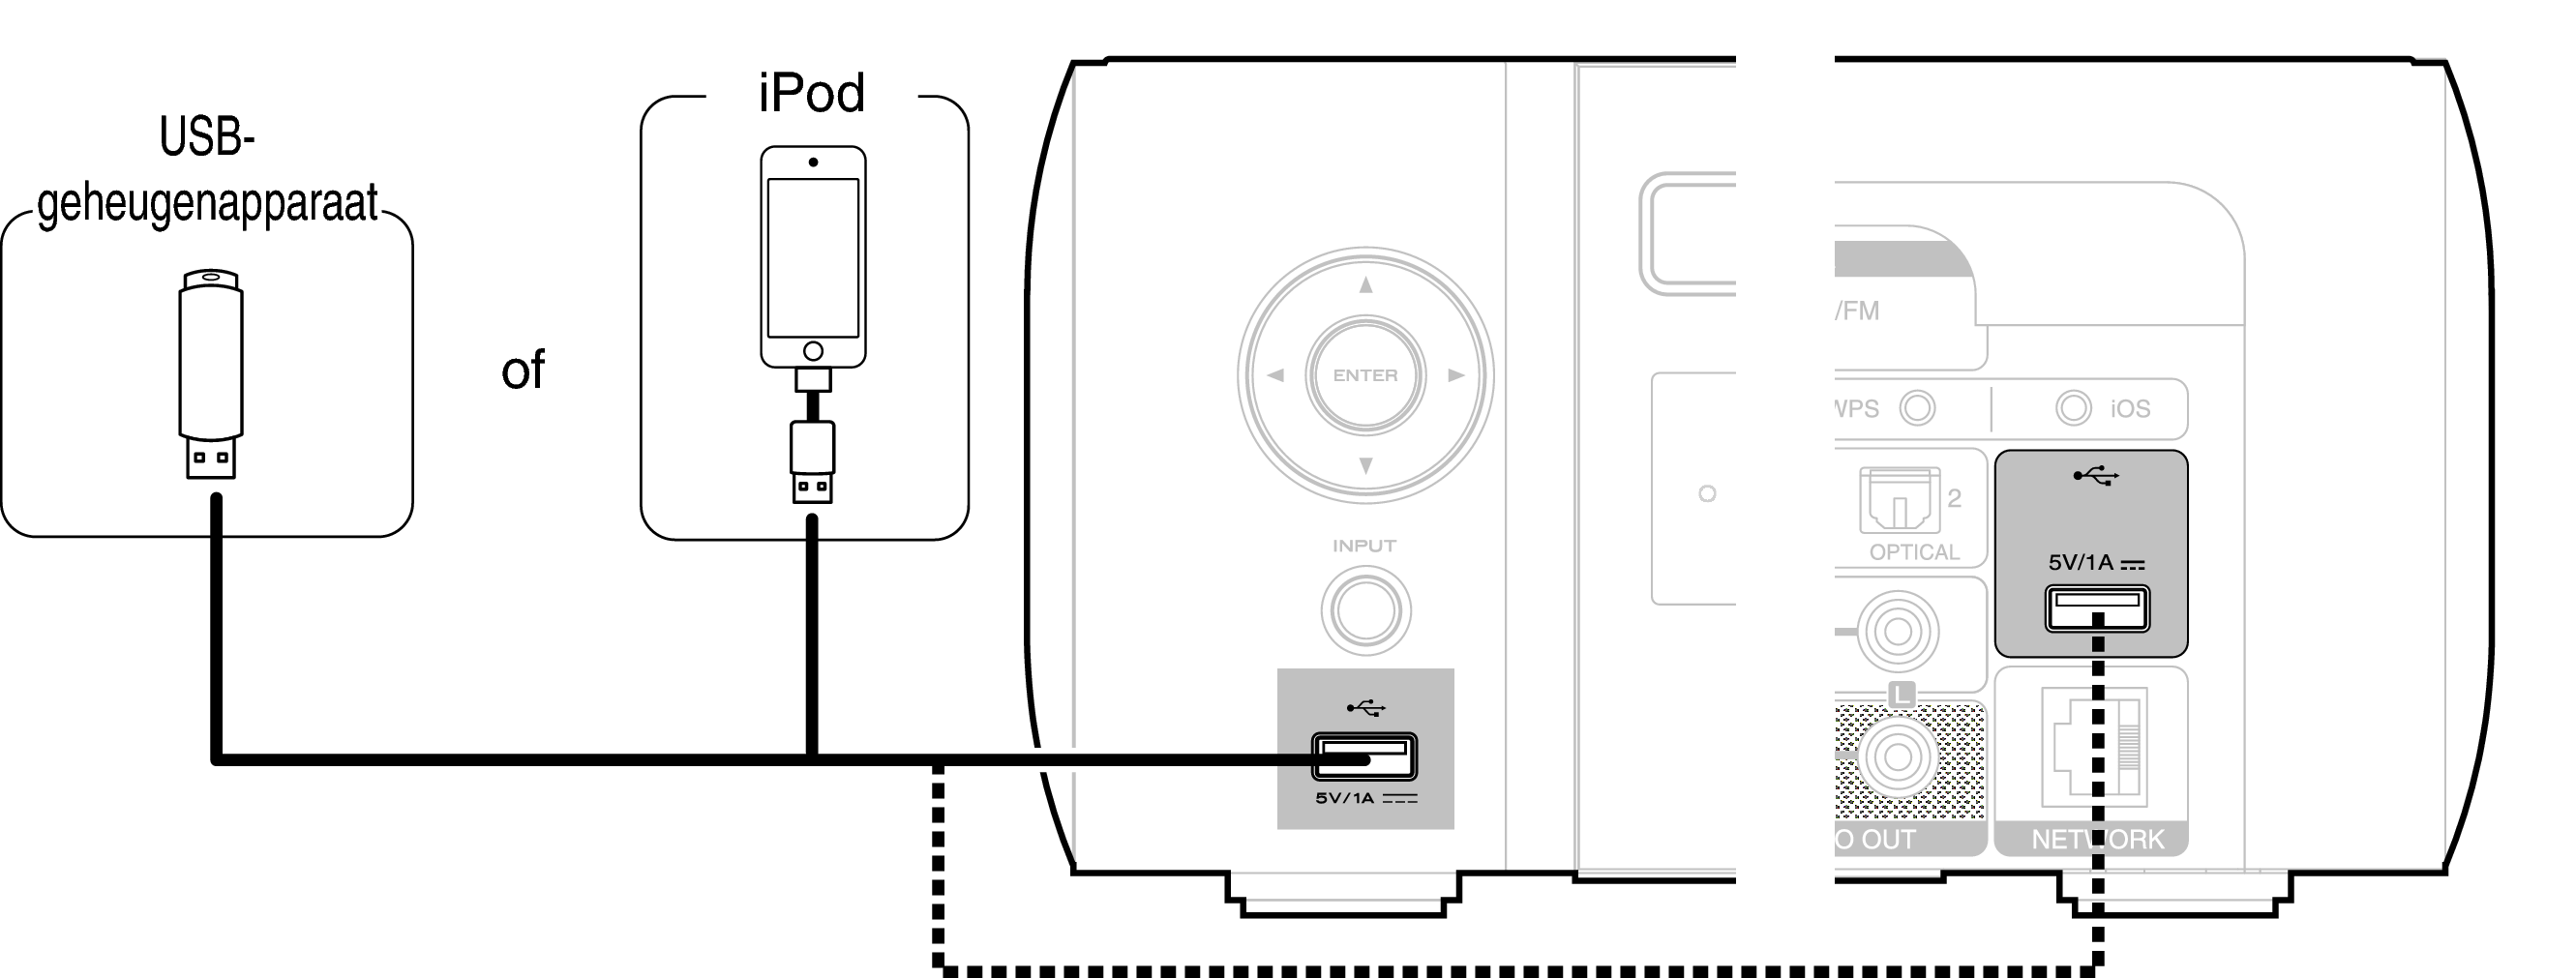 niettemin roze Imperialisme Een iPod of USB-geheugenapparaat aansluiten op de USB-poort M-CR611